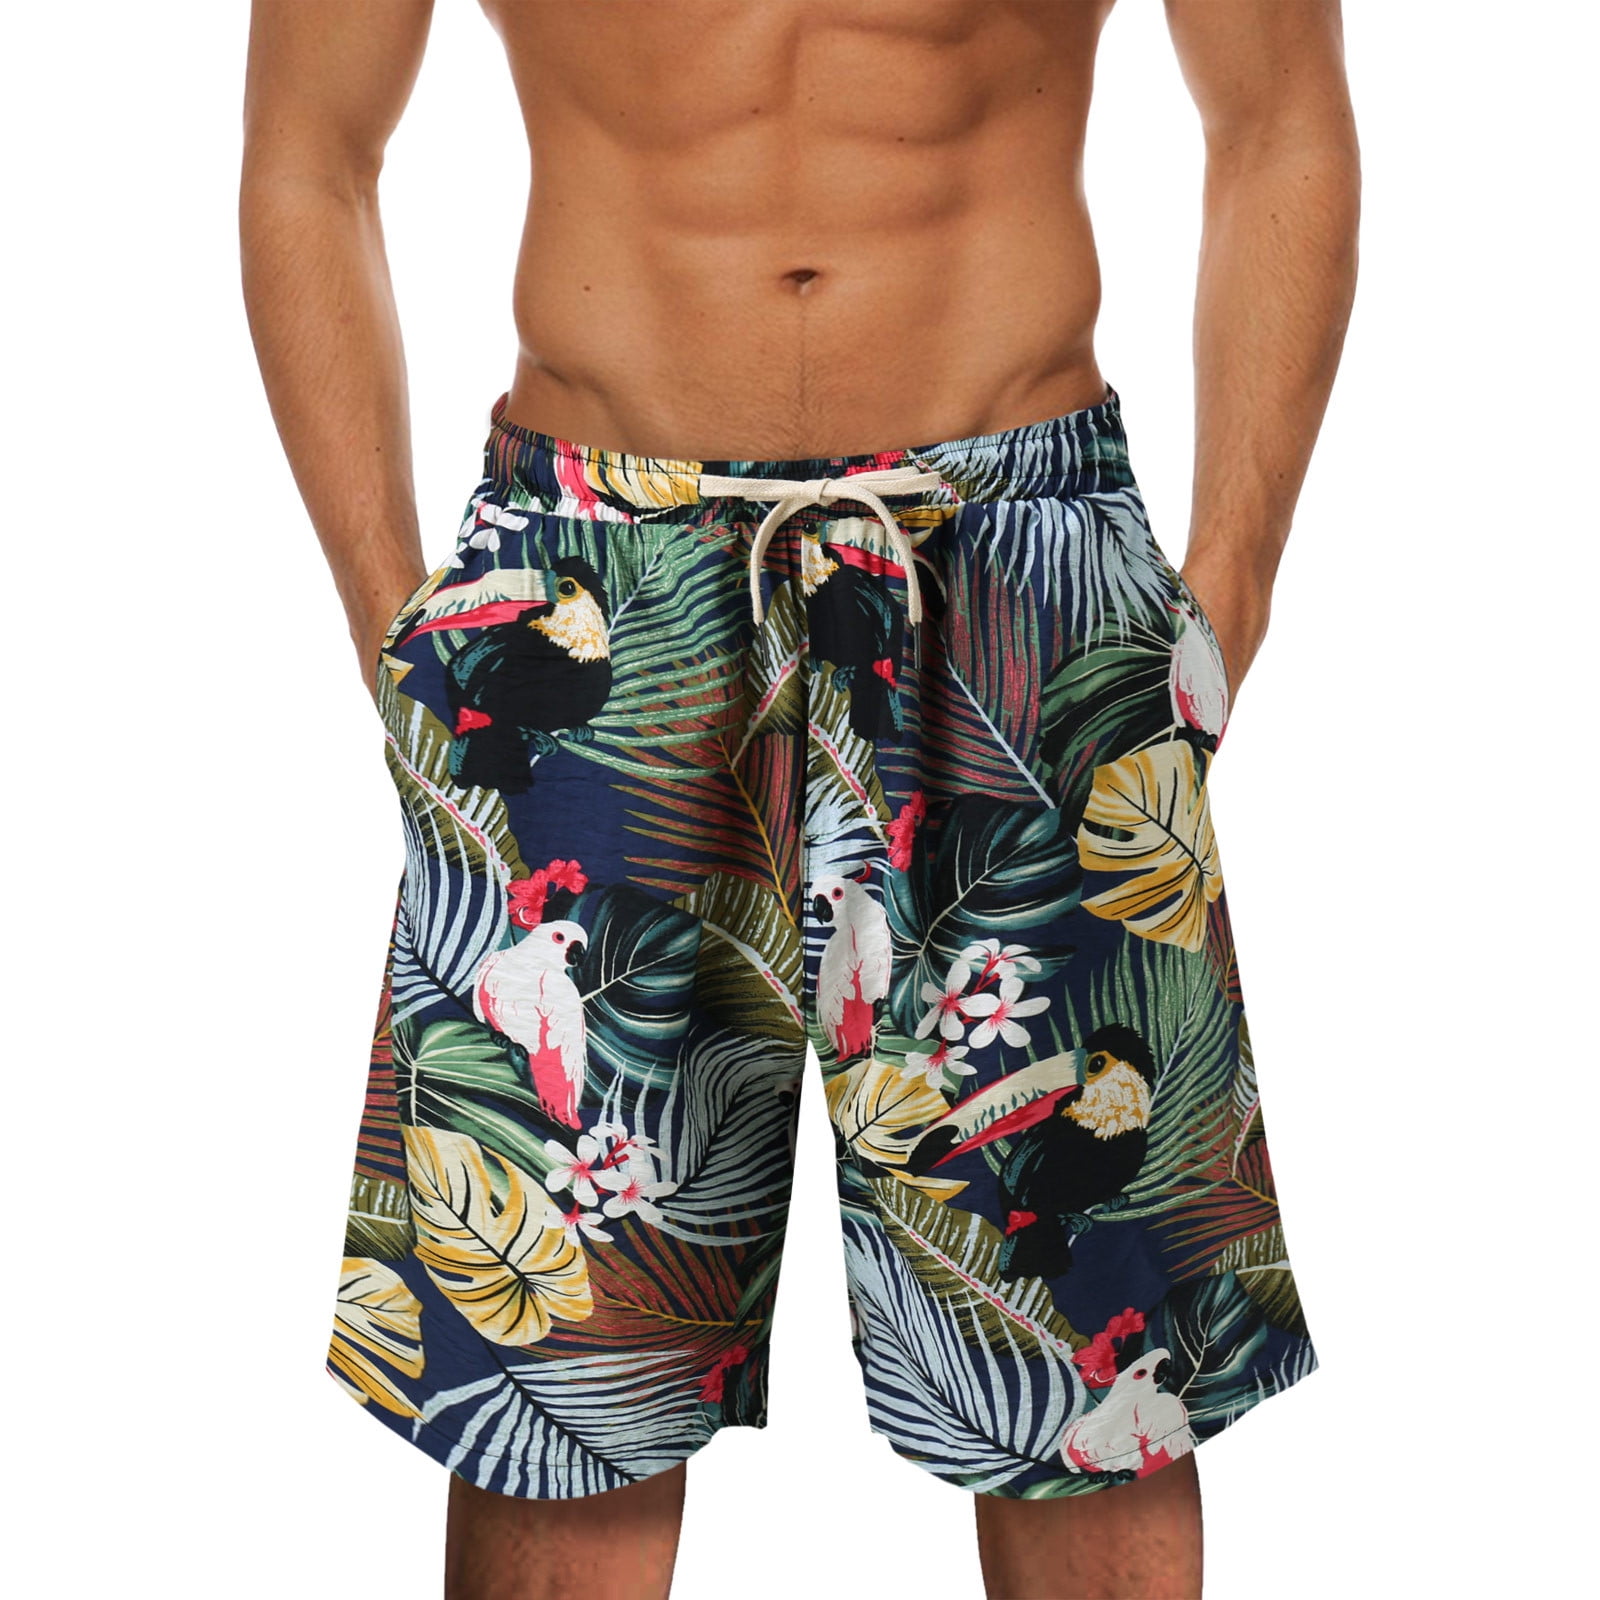 Mens Beach Shorts Summer Summer Short Pant Printed Short Loose Tether  Pocket Board Casual Pant Short Beach Fashion Short